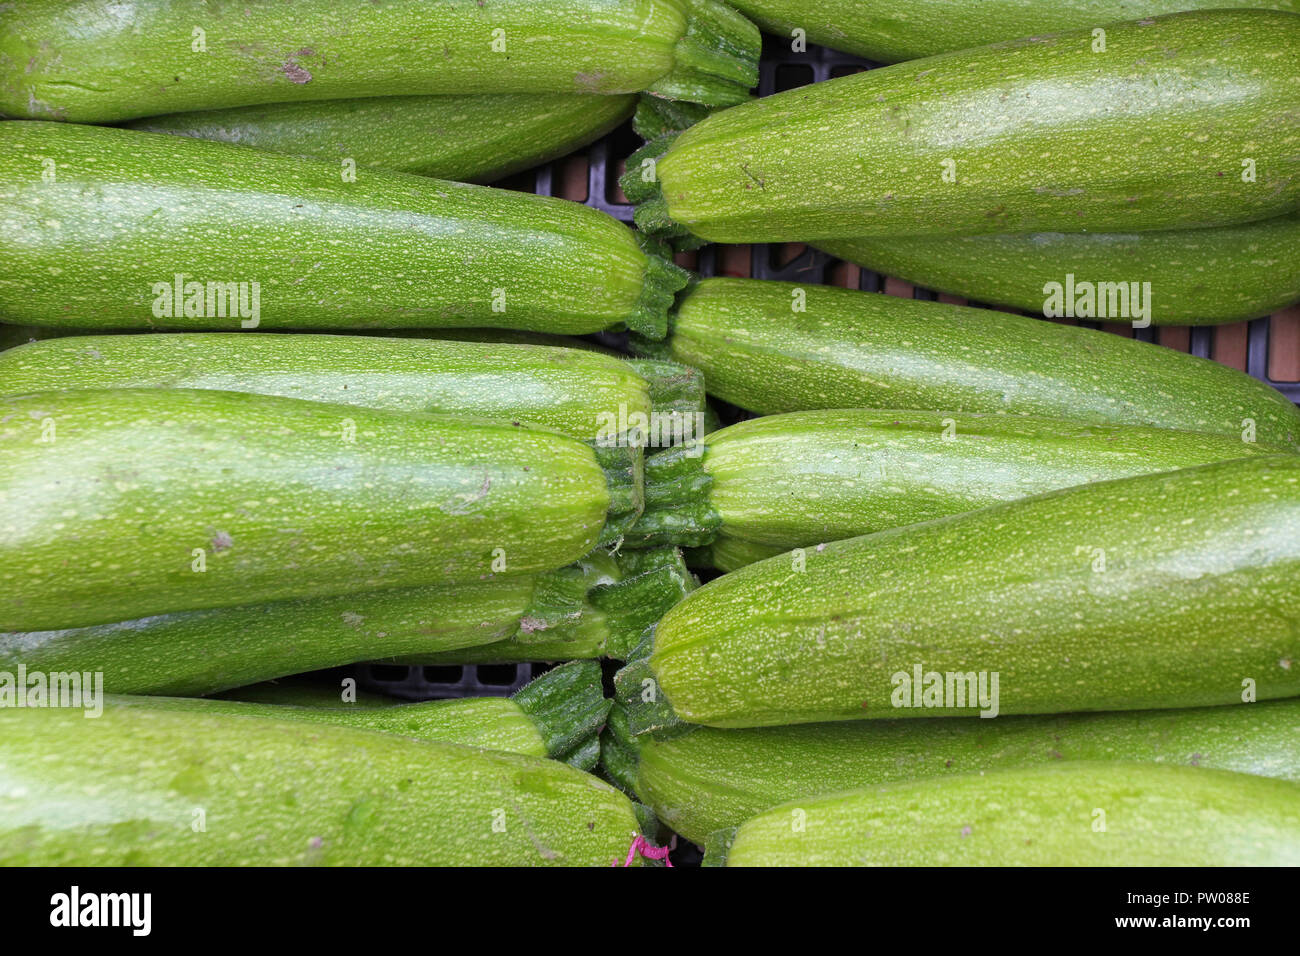 https://c8.alamy.com/compit/pw088e/zucchine-zucchine-fresche-verdura-verde-sul-locale-mercato-contadino-appena-raccolto-la-zucchina-estate-squash-verde-biologico-zucchine-sfondo-veget-pw088e.jpg